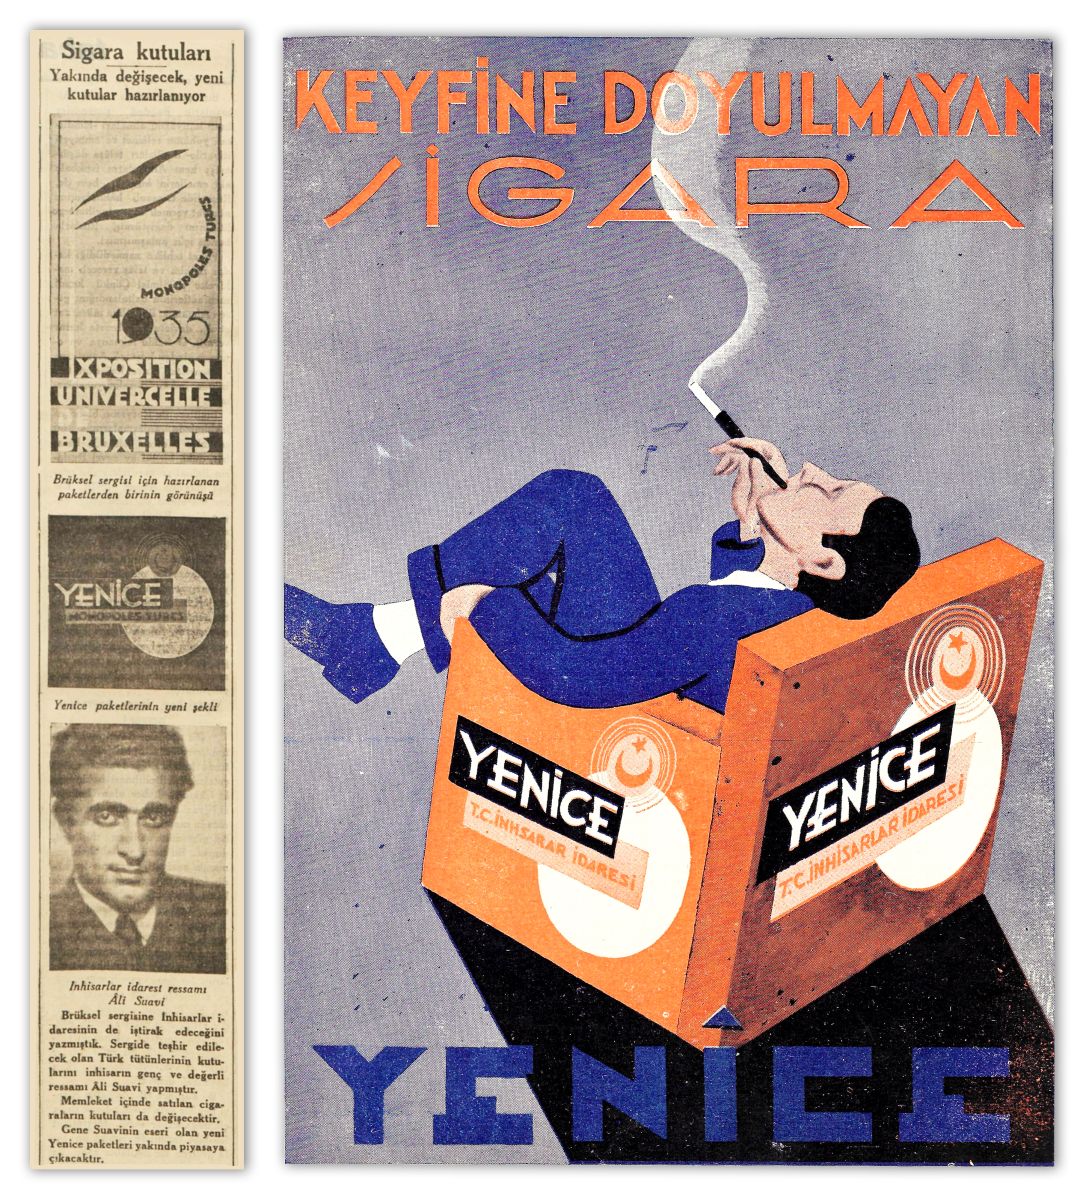 Gorsel20 1935 1936 Inhisar Yenice Kopya 20 Nisan 1935 tarihli <i>Tan</i> gazetesinden haber (solda) ve Yenice sigarası reklamı, <i>Akbaba</i>, Sayı: 138, 29 Ağustos 1936, s. 20 (sağda)